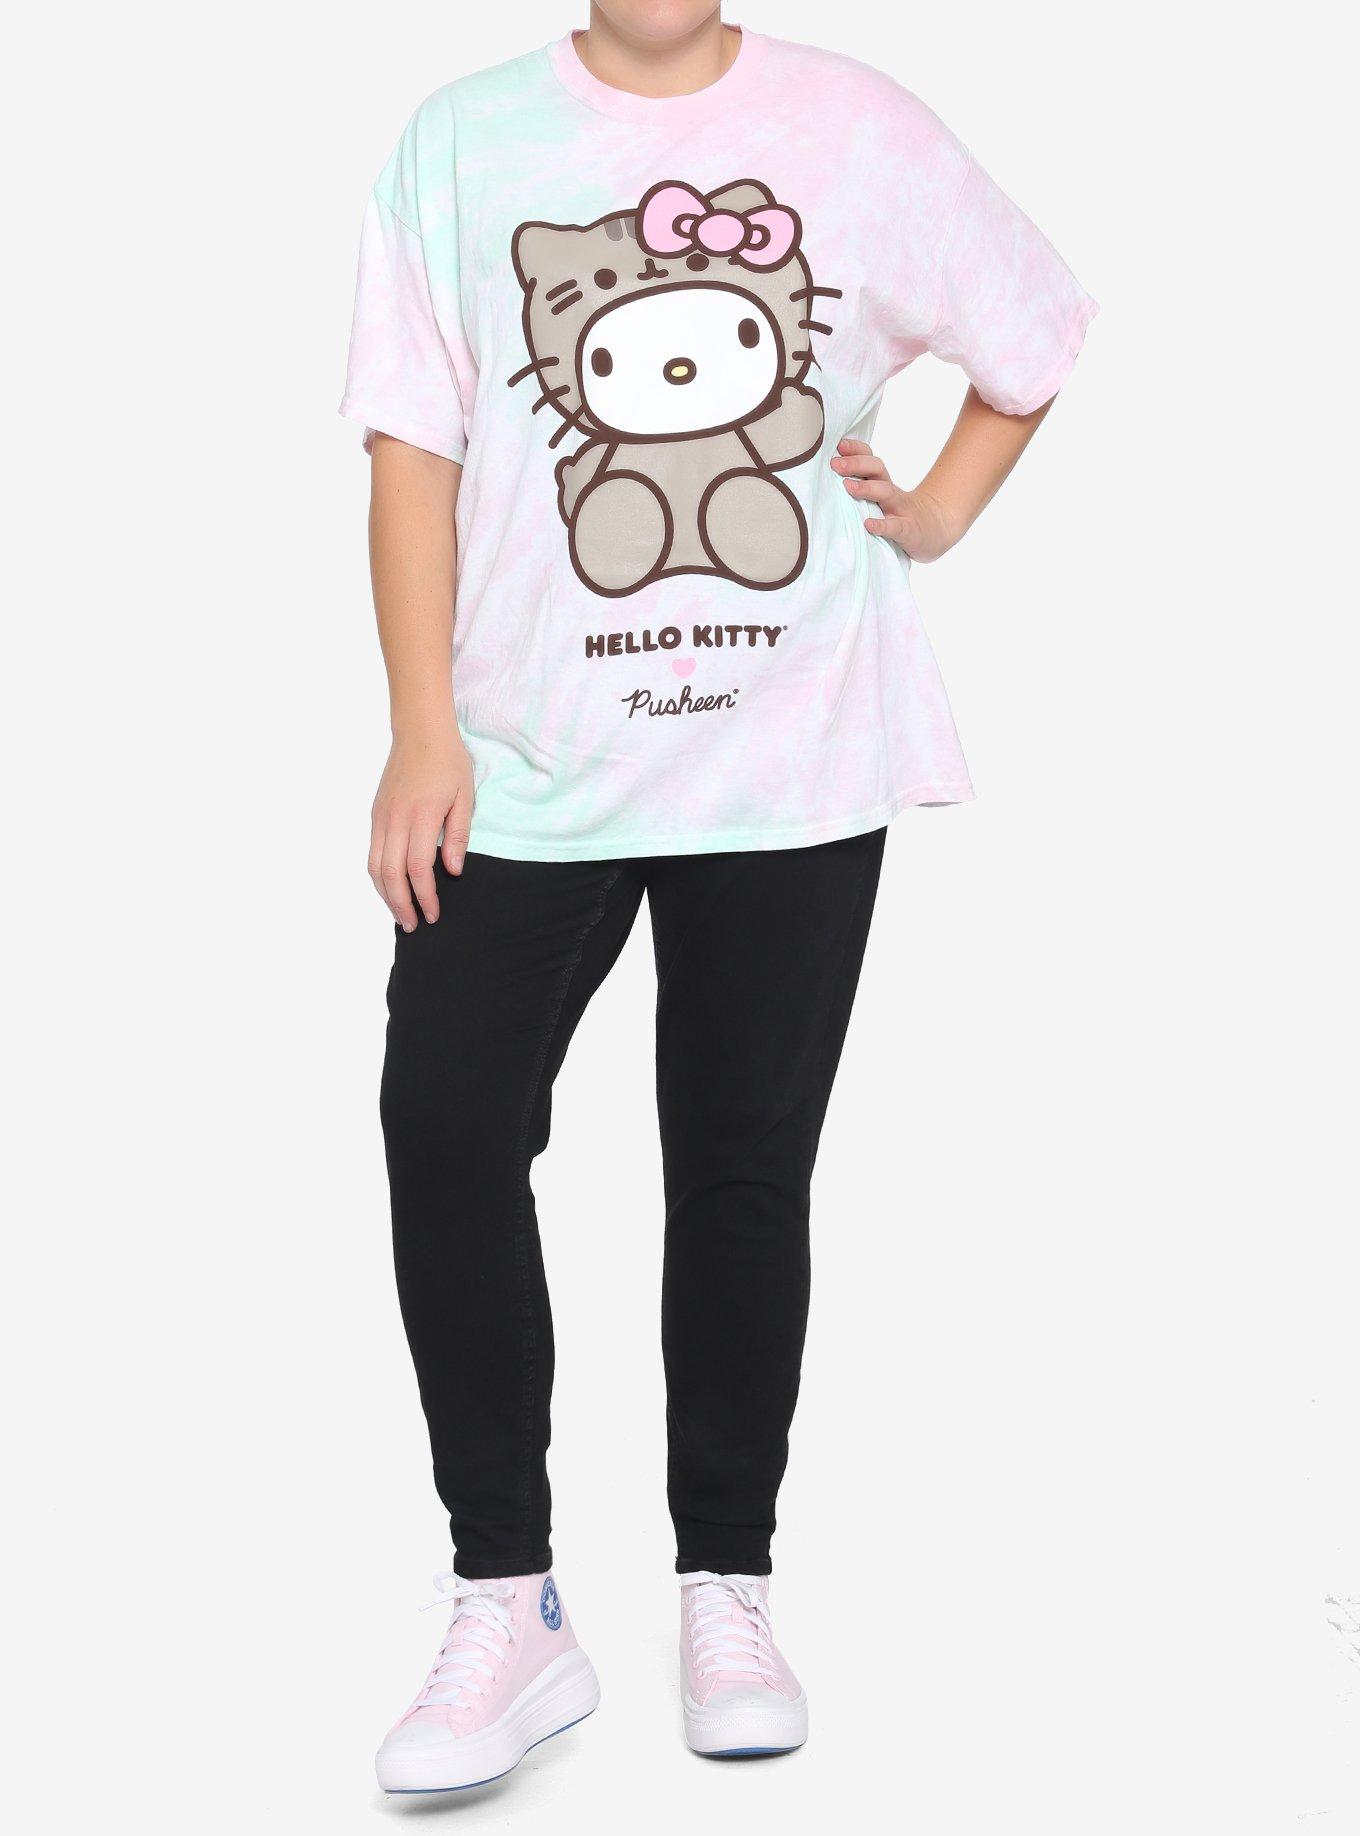 Hello Kitty X Pusheen Tie-Dye Boyfriend Fit Girls T-Shirt Plus Size, MULTI, alternate